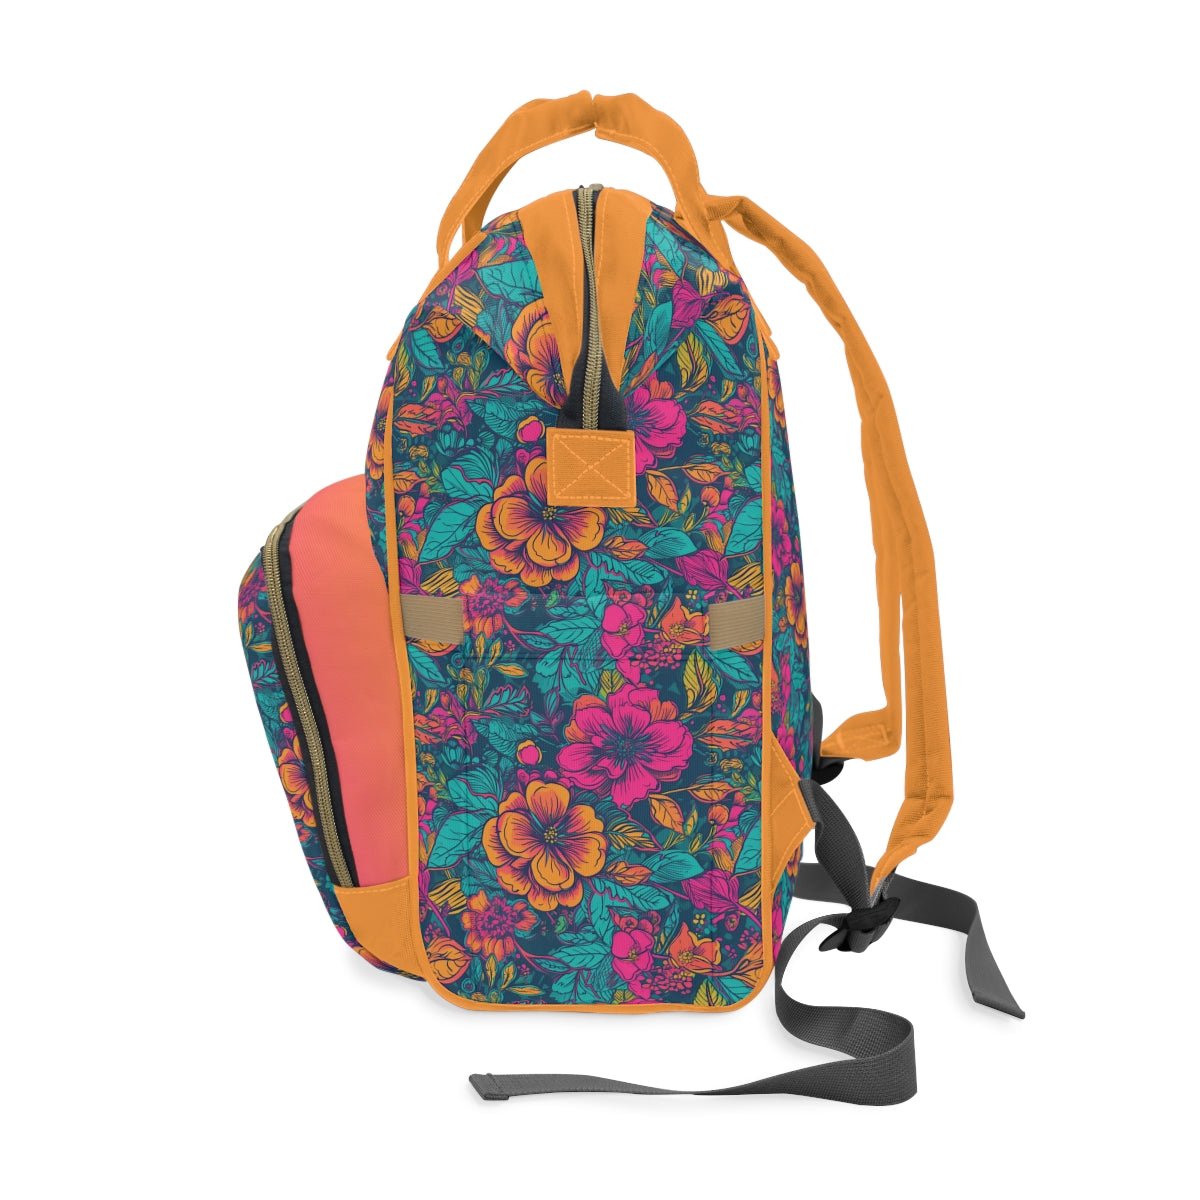 Backpack Bag in Neon Floral Dreams - Modern Kastle Shop